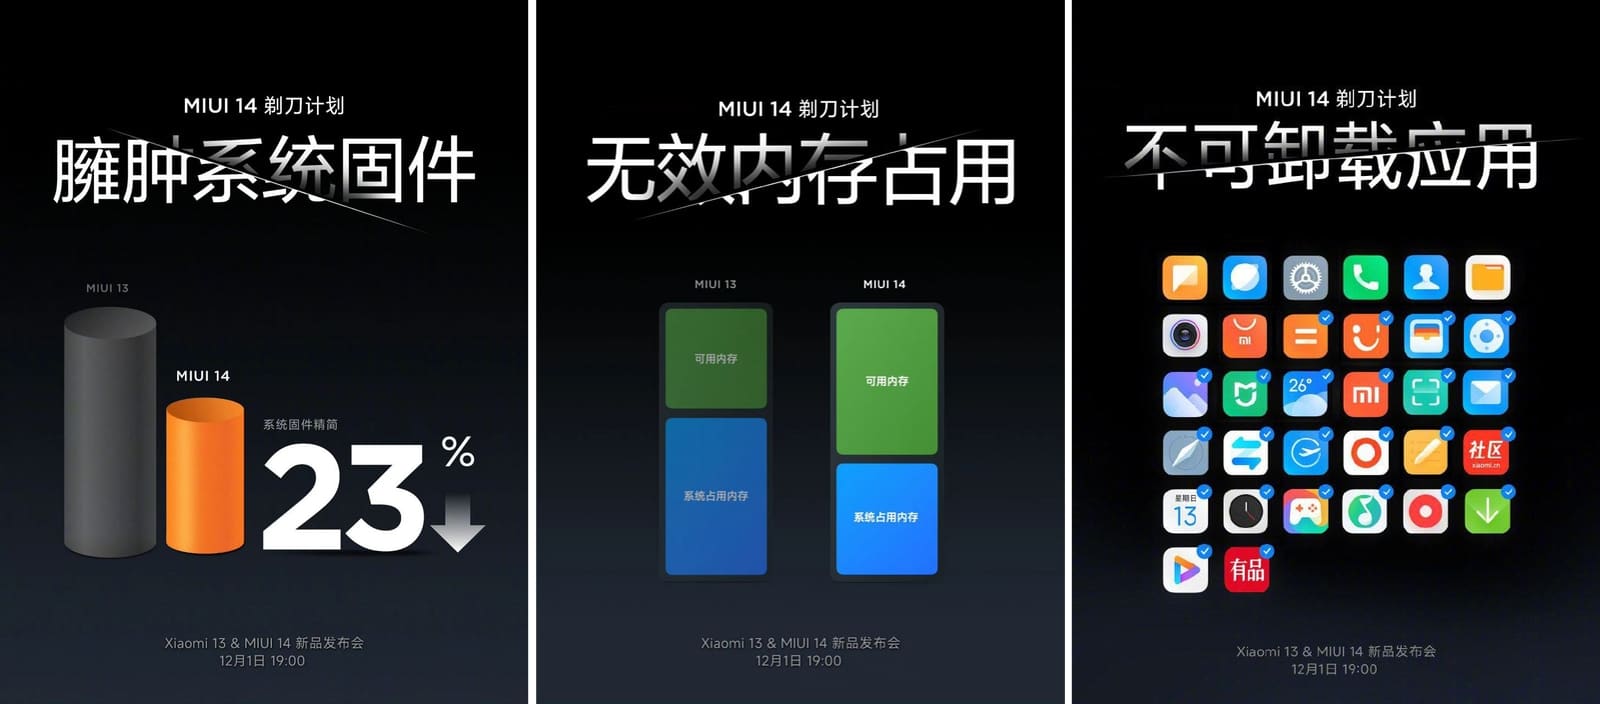 Xiaomi 13 или xiaomi 14. Супер иконки MIUI 14. MIUI 14 Global. Xiaomi MIUI 14. Xiaomi 13.